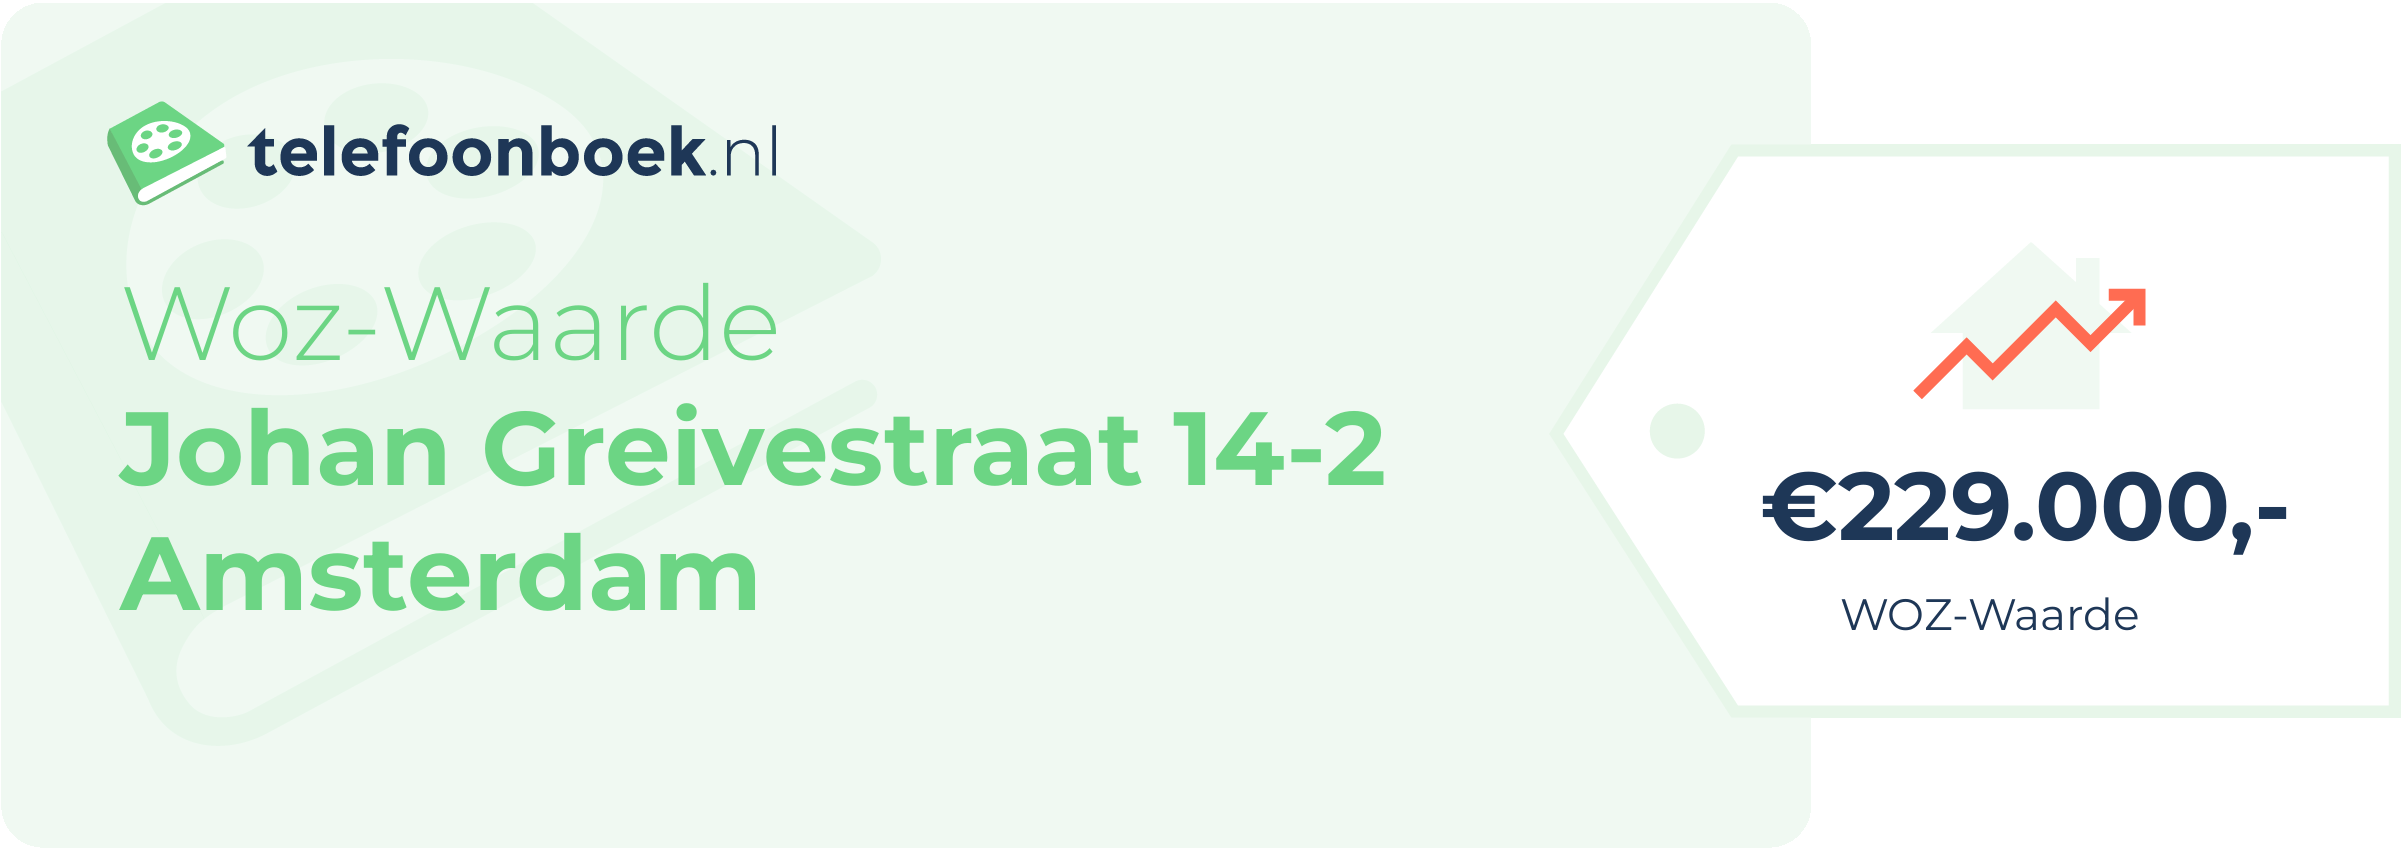 WOZ-waarde Johan Greivestraat 14-2 Amsterdam